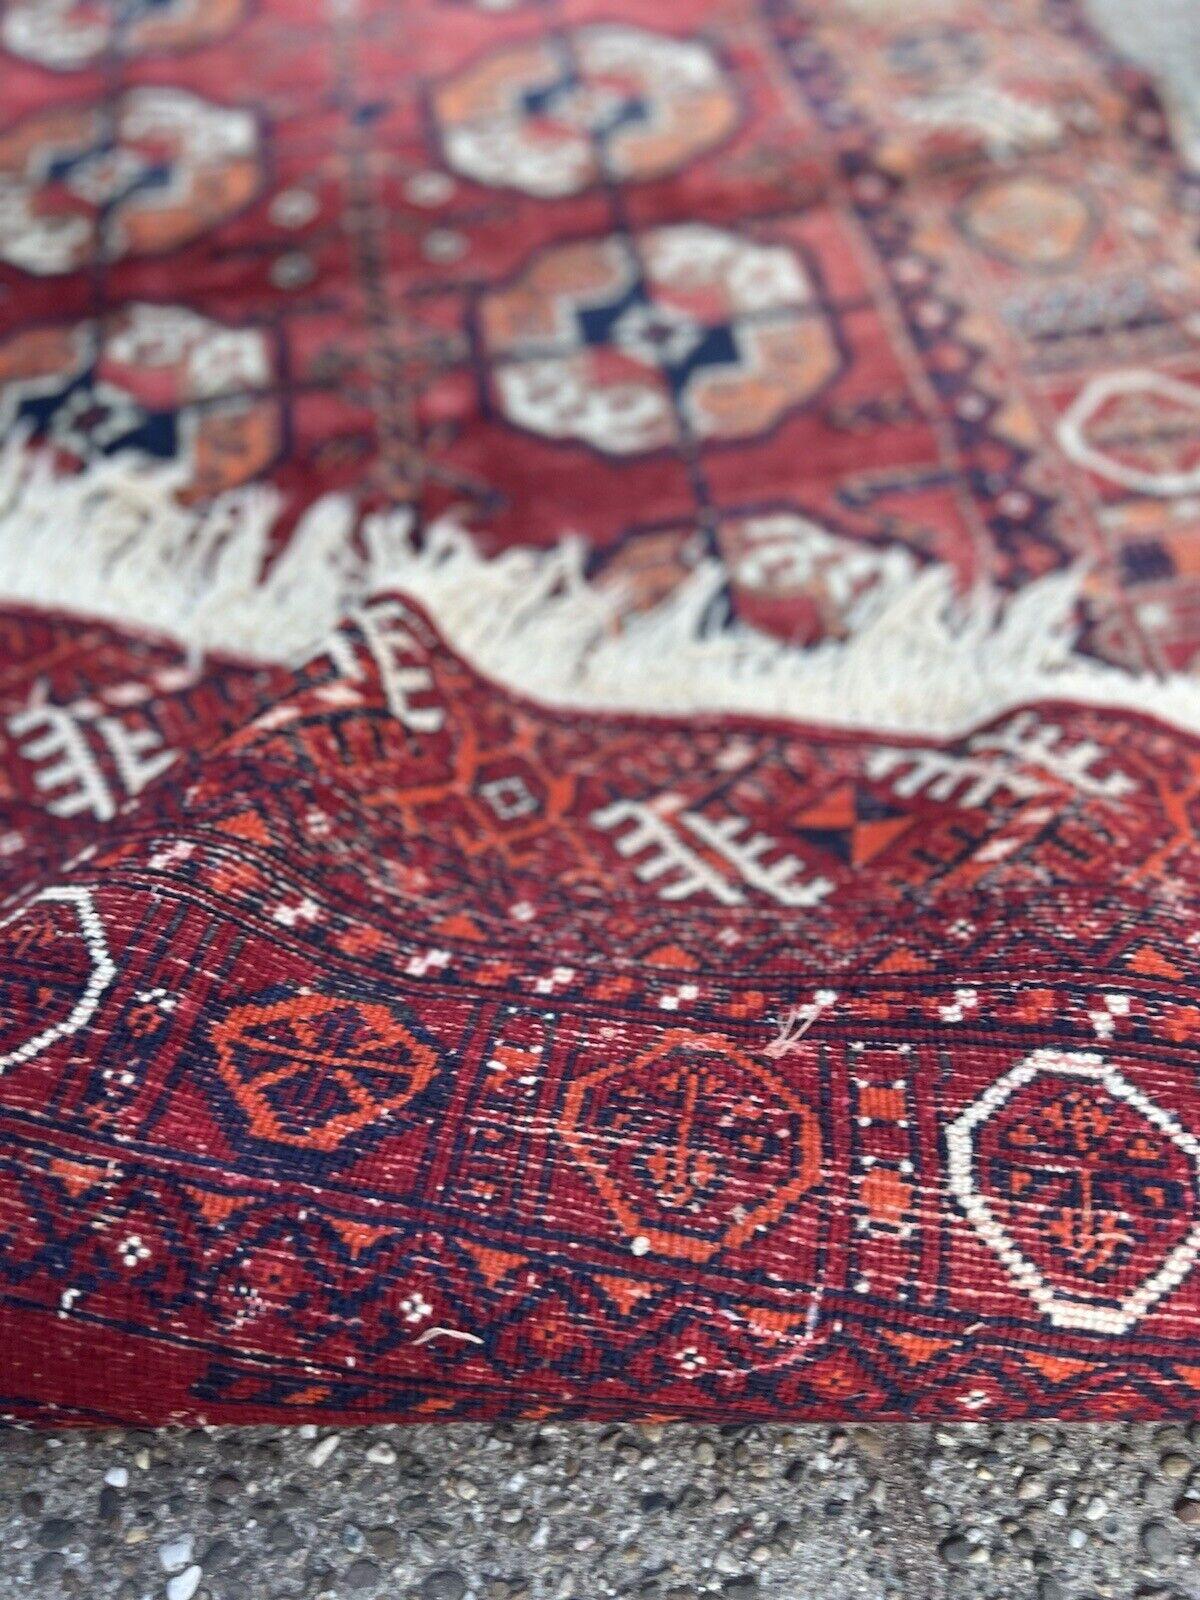 Versetzen Sie sich in die Vergangenheit mit diesem exquisiten handgefertigten afghanischen Ersari-Teppich im Vintage-Stil, einem zeitlosen Kunstwerk aus den 1970er Jahren. Mit den Maßen 3,2' x 4,6' (98cm x 142cm) hat dieser Teppich die perfekte